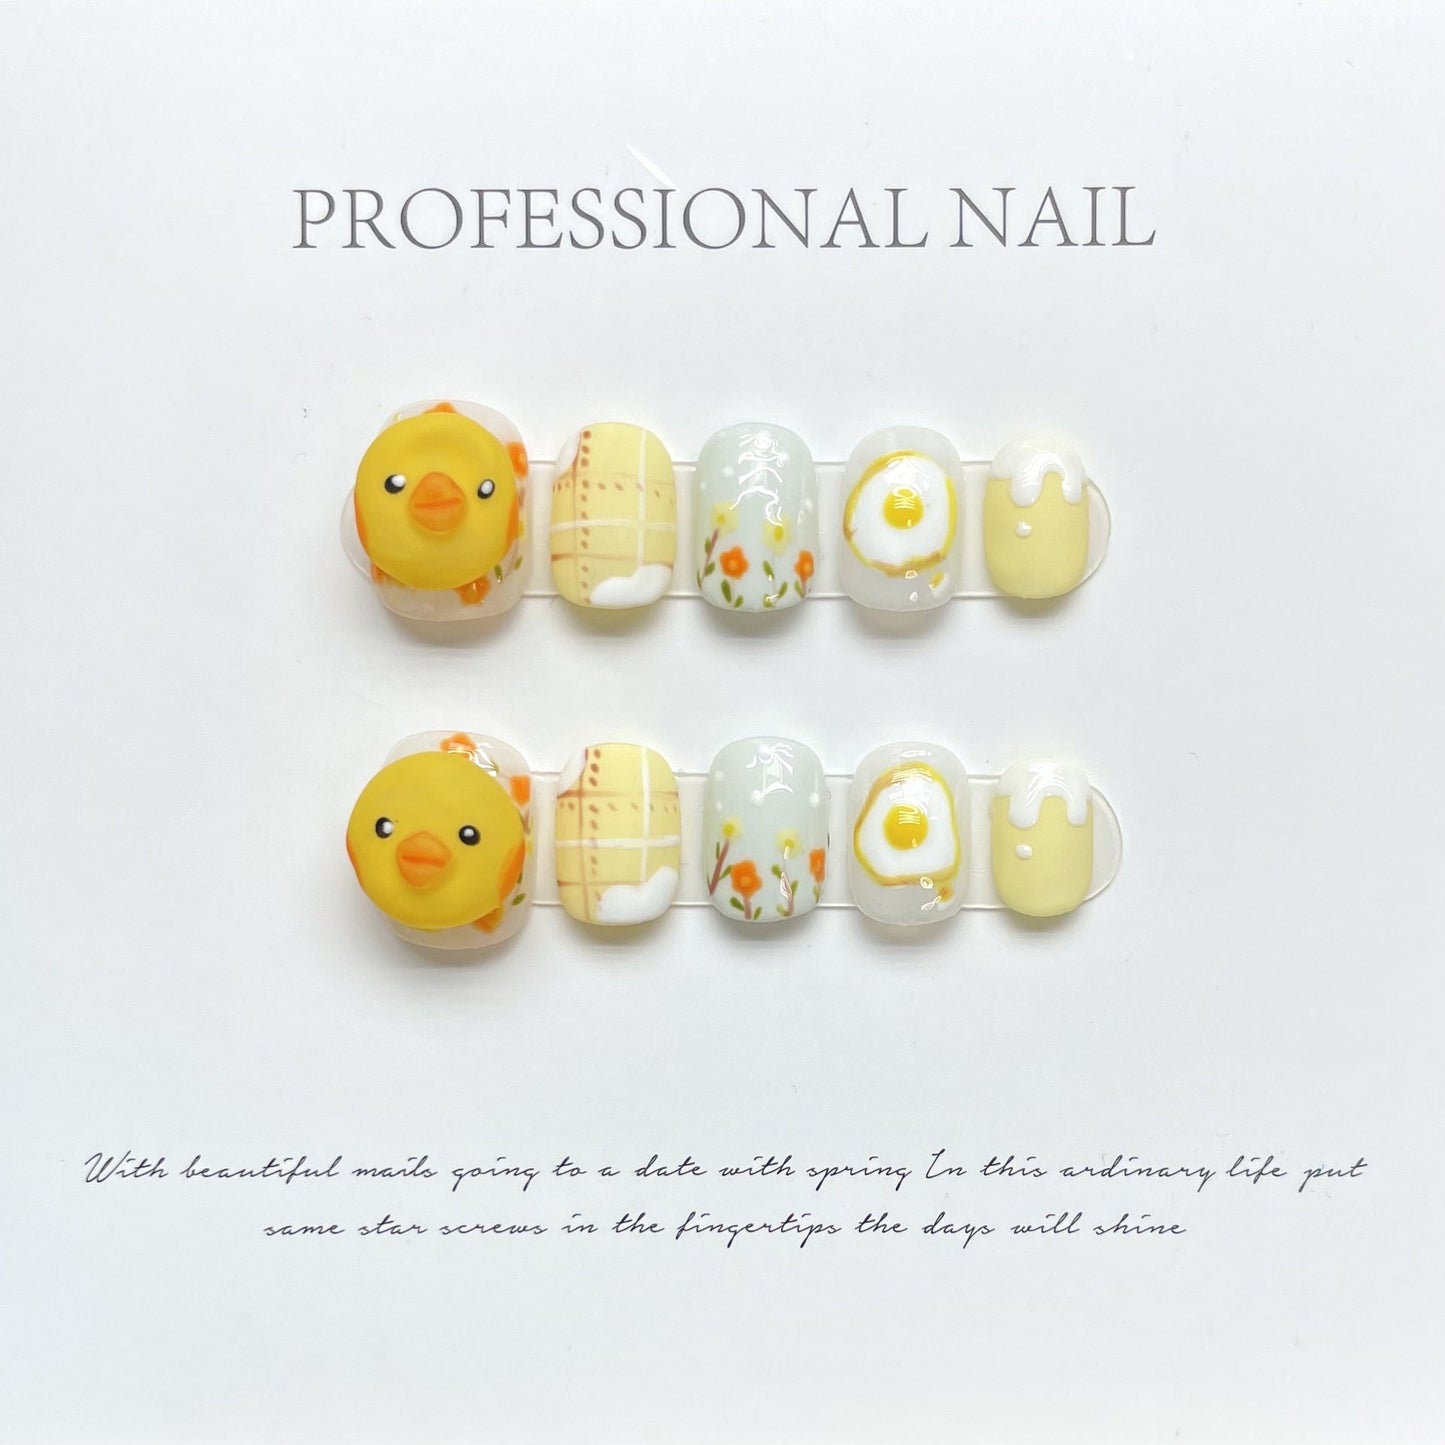 1010 Dierenkuiken-stijl press-on-nagels 100% handgemaakte kunstnagels geel